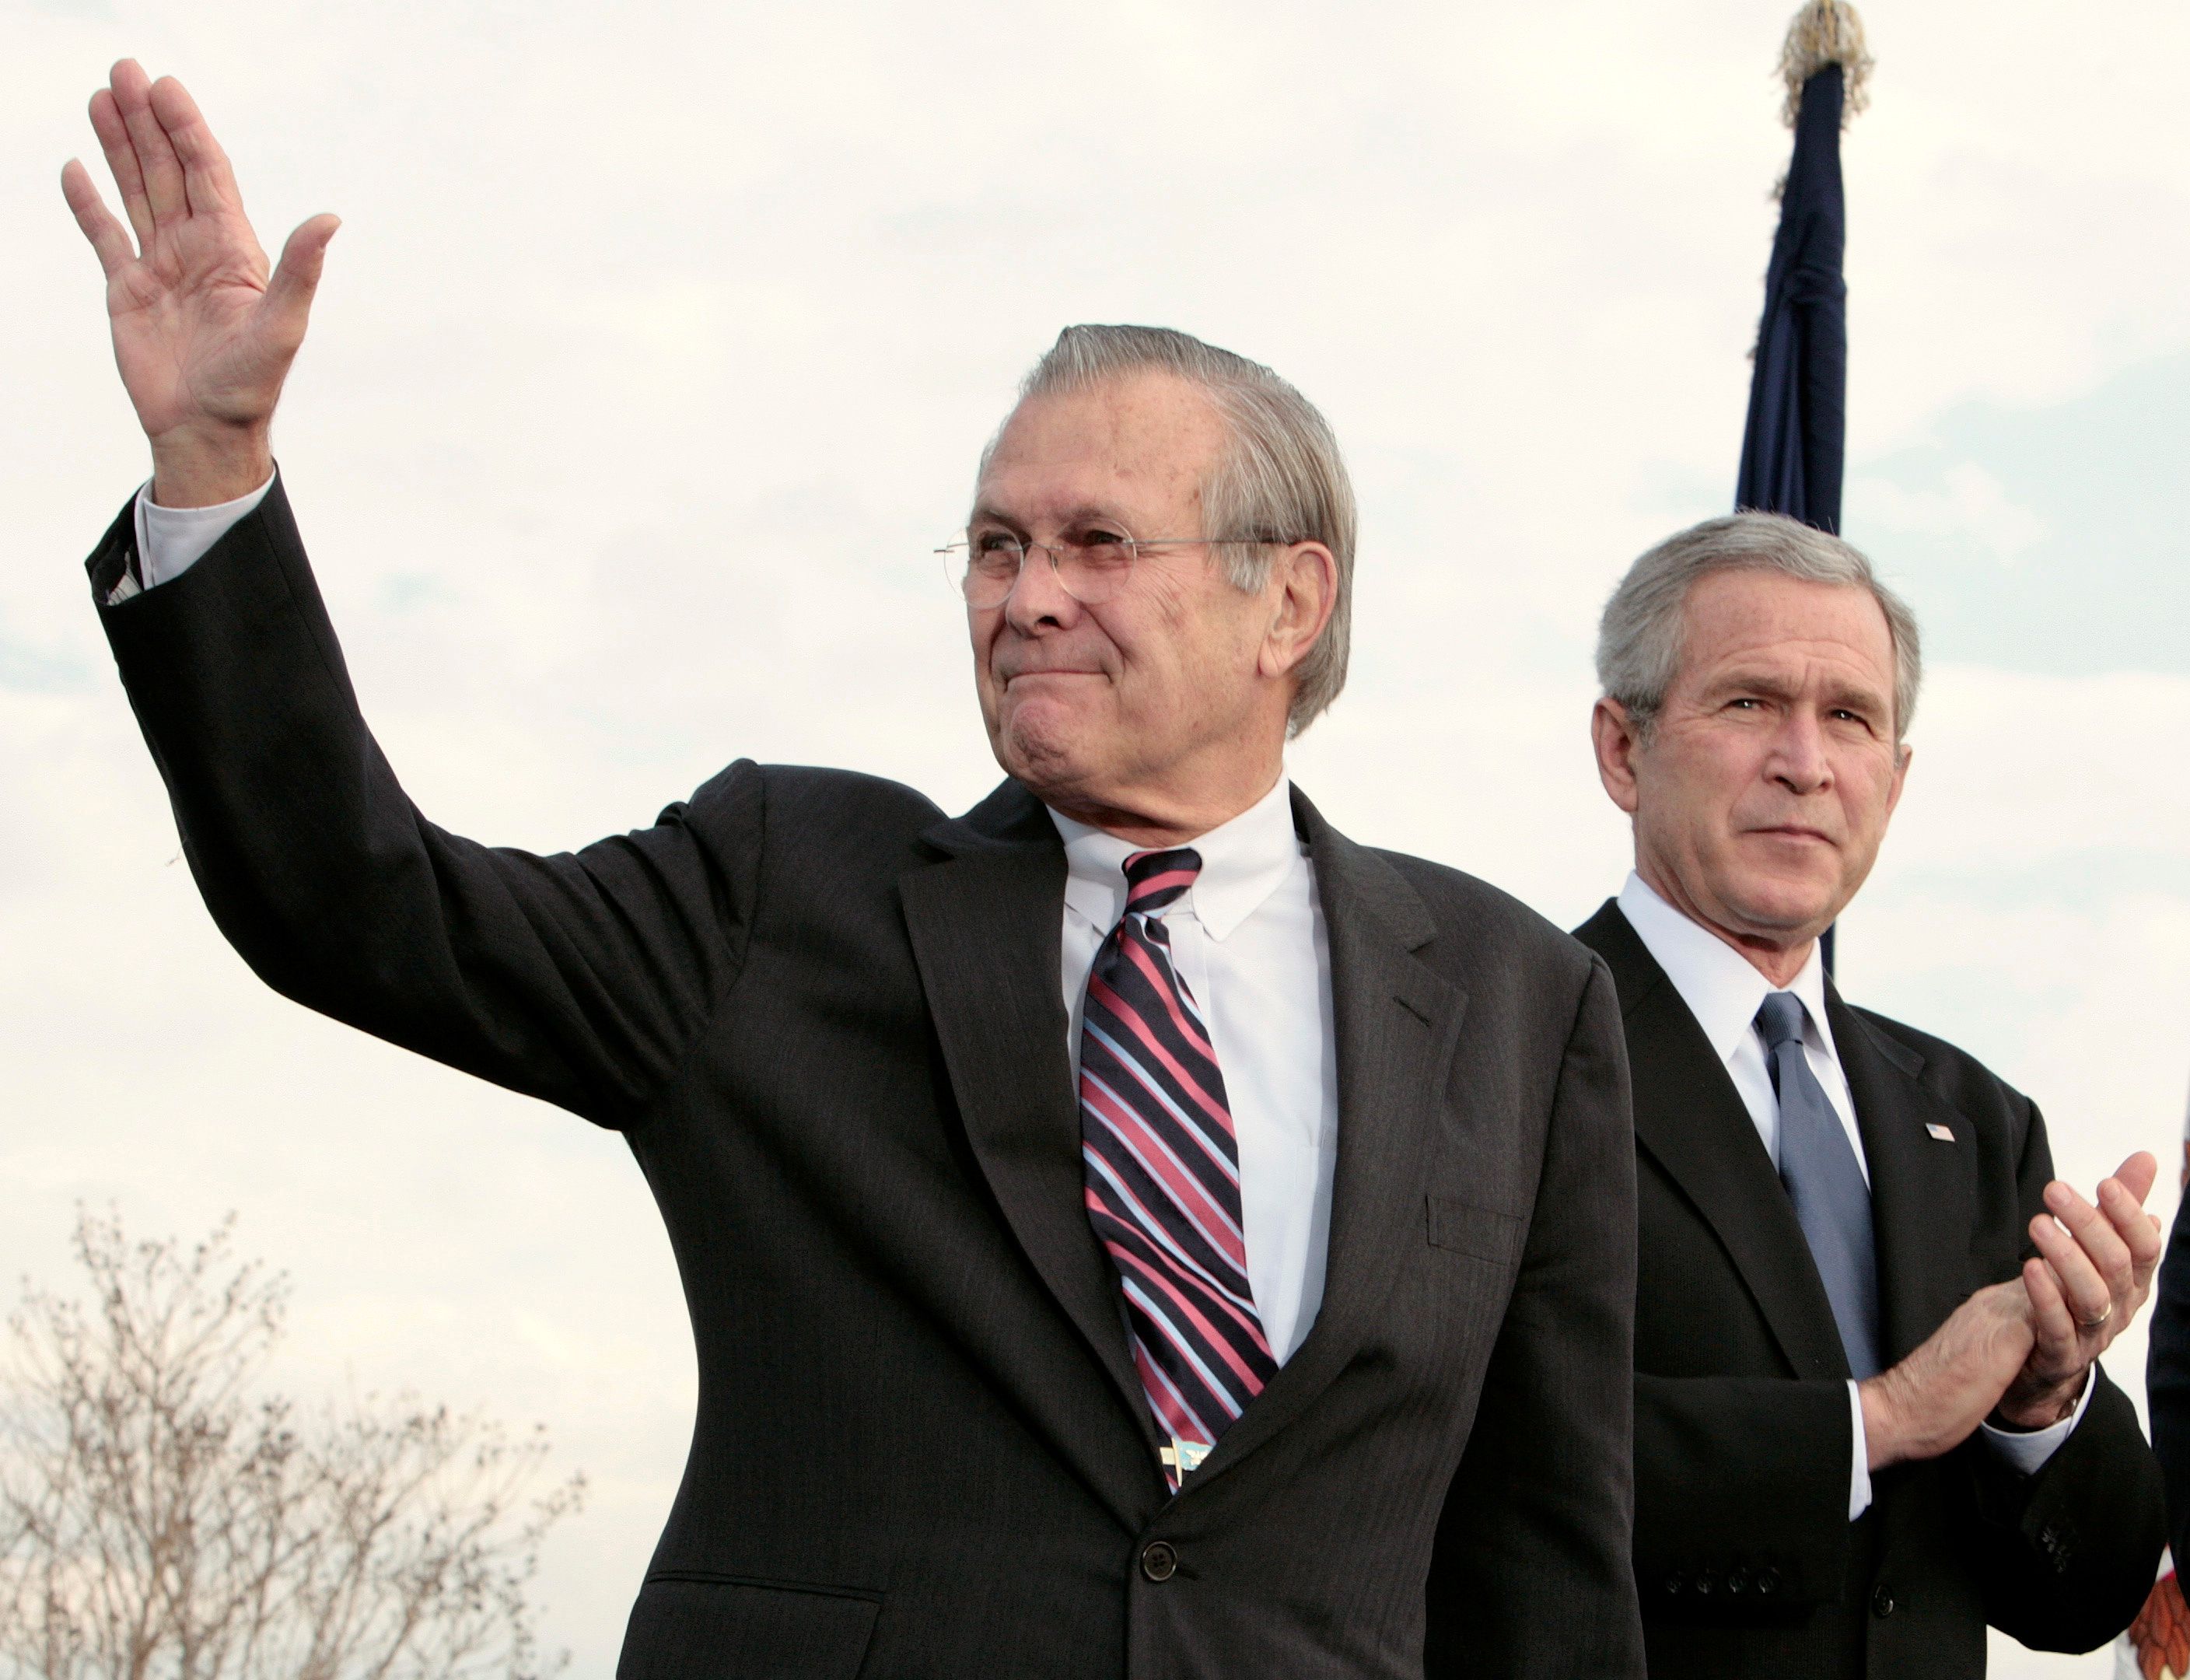 FOTO DE ARCHIVO: El secretario de Defensa de EEUU, Donald Rumsfeld, saluda junto al presidente de EEUU, George W. Bush, durante la Revisión de Honor de las Fuerzas Armadas en el Pentágono, en Washington, el 15 de diciembre de 2006. REUTERS/Larry Downing